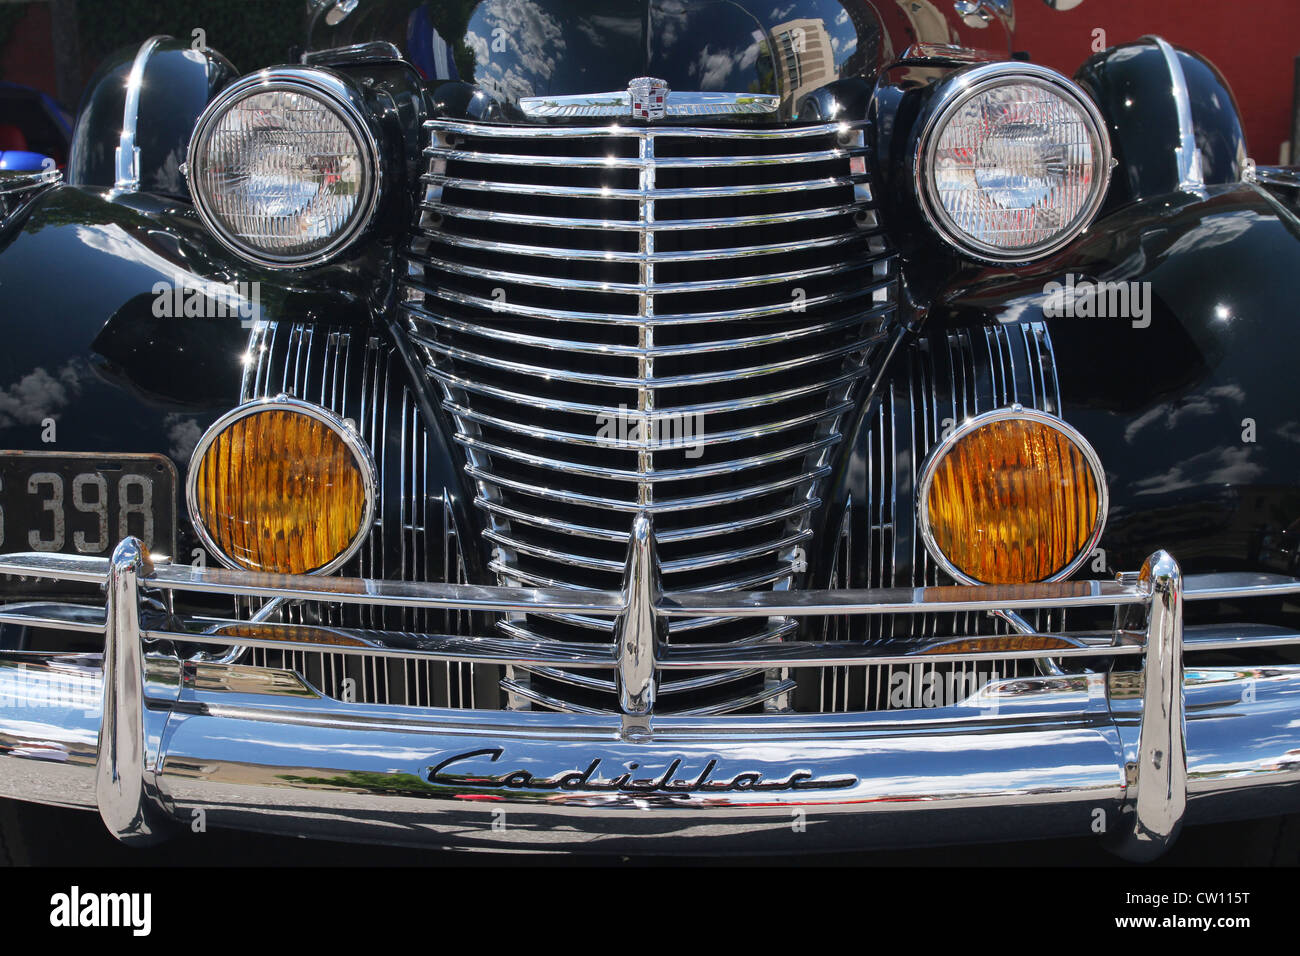 Auto-1940 Cadillac Series 75. 1 von 29 je gemacht habe. Hinweis Wolke und Gebäude Reflexionen sind sichtbar. Stockfoto